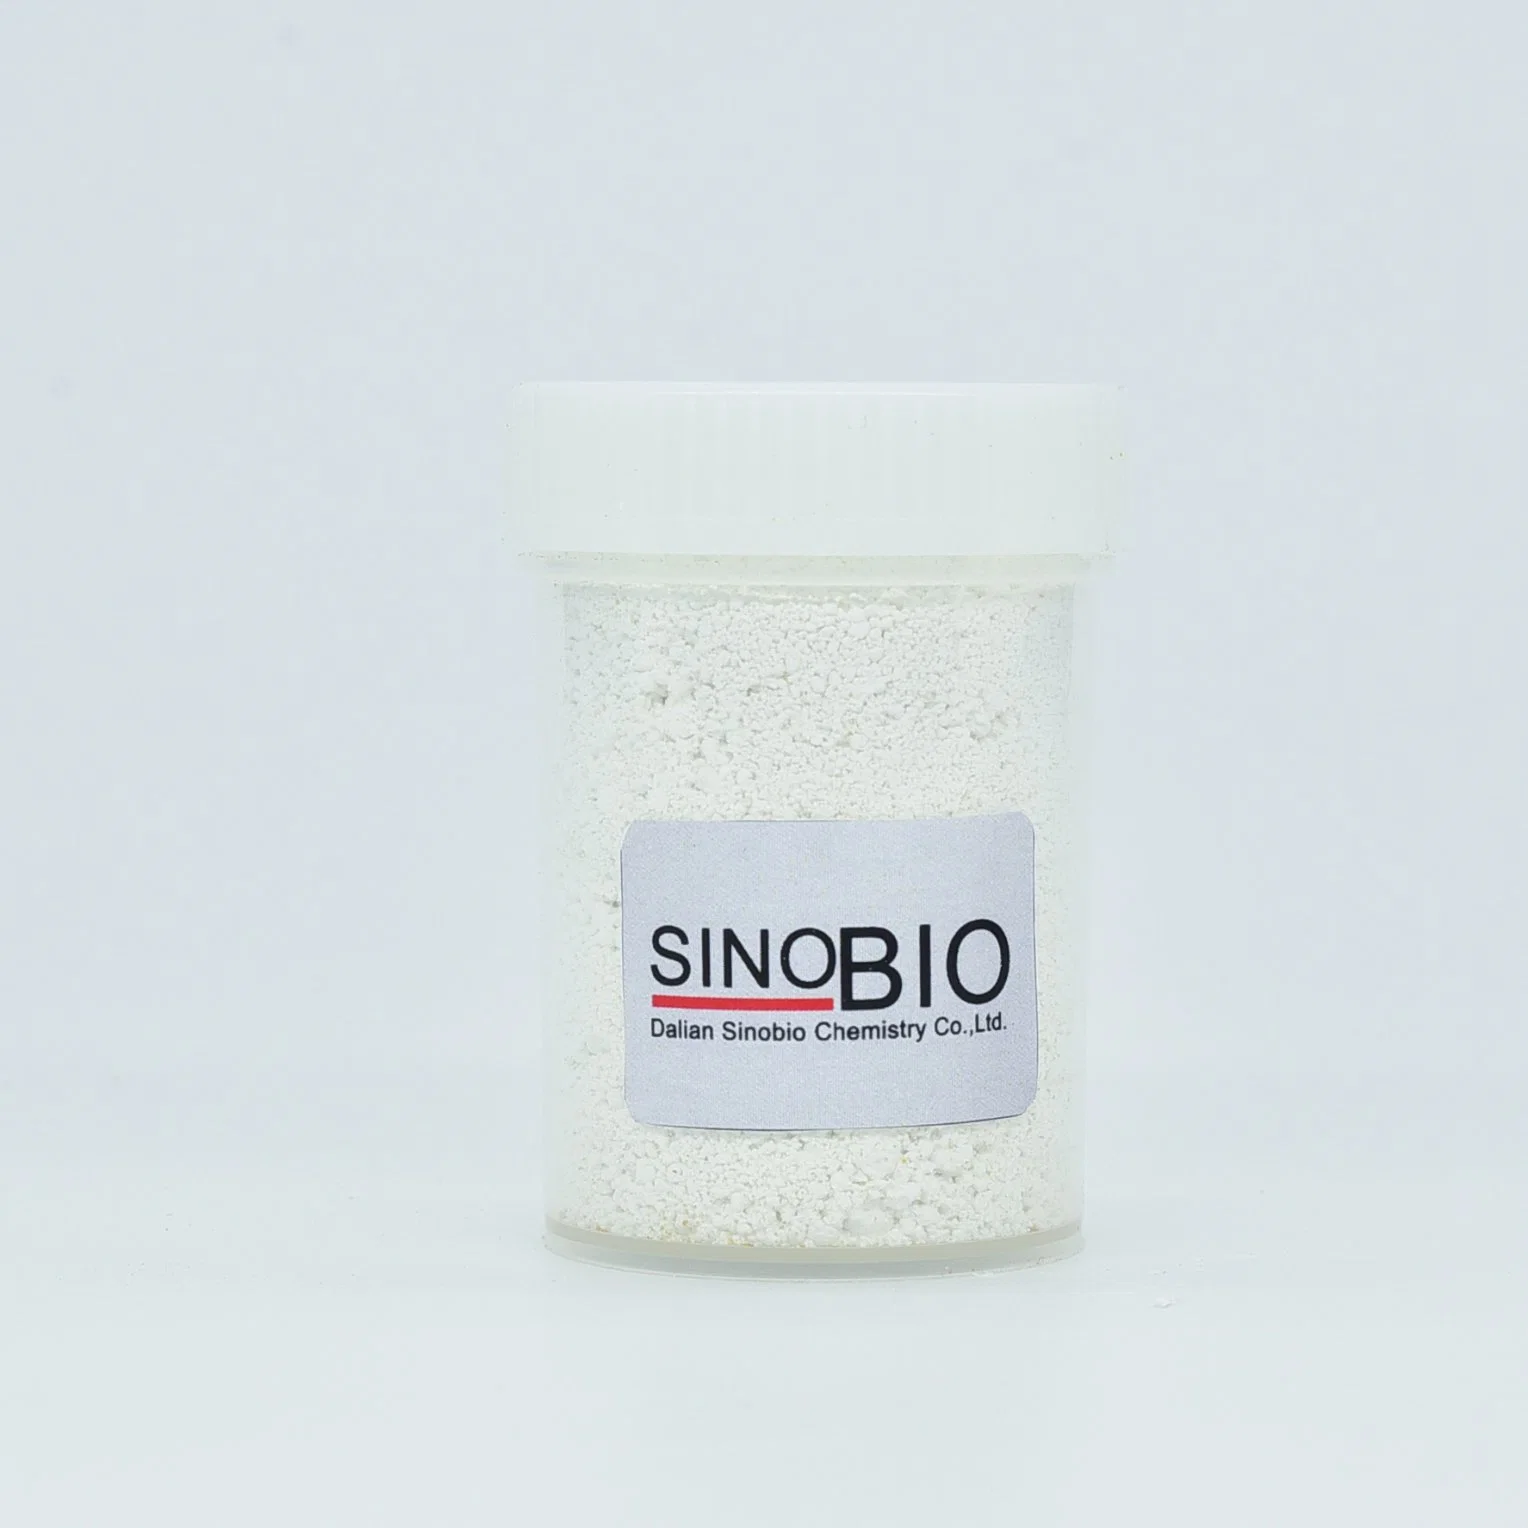 البيع المباشر للمصنع سينوبيو مبيد الحشرات فيبرونيل CAS 120068-37-3